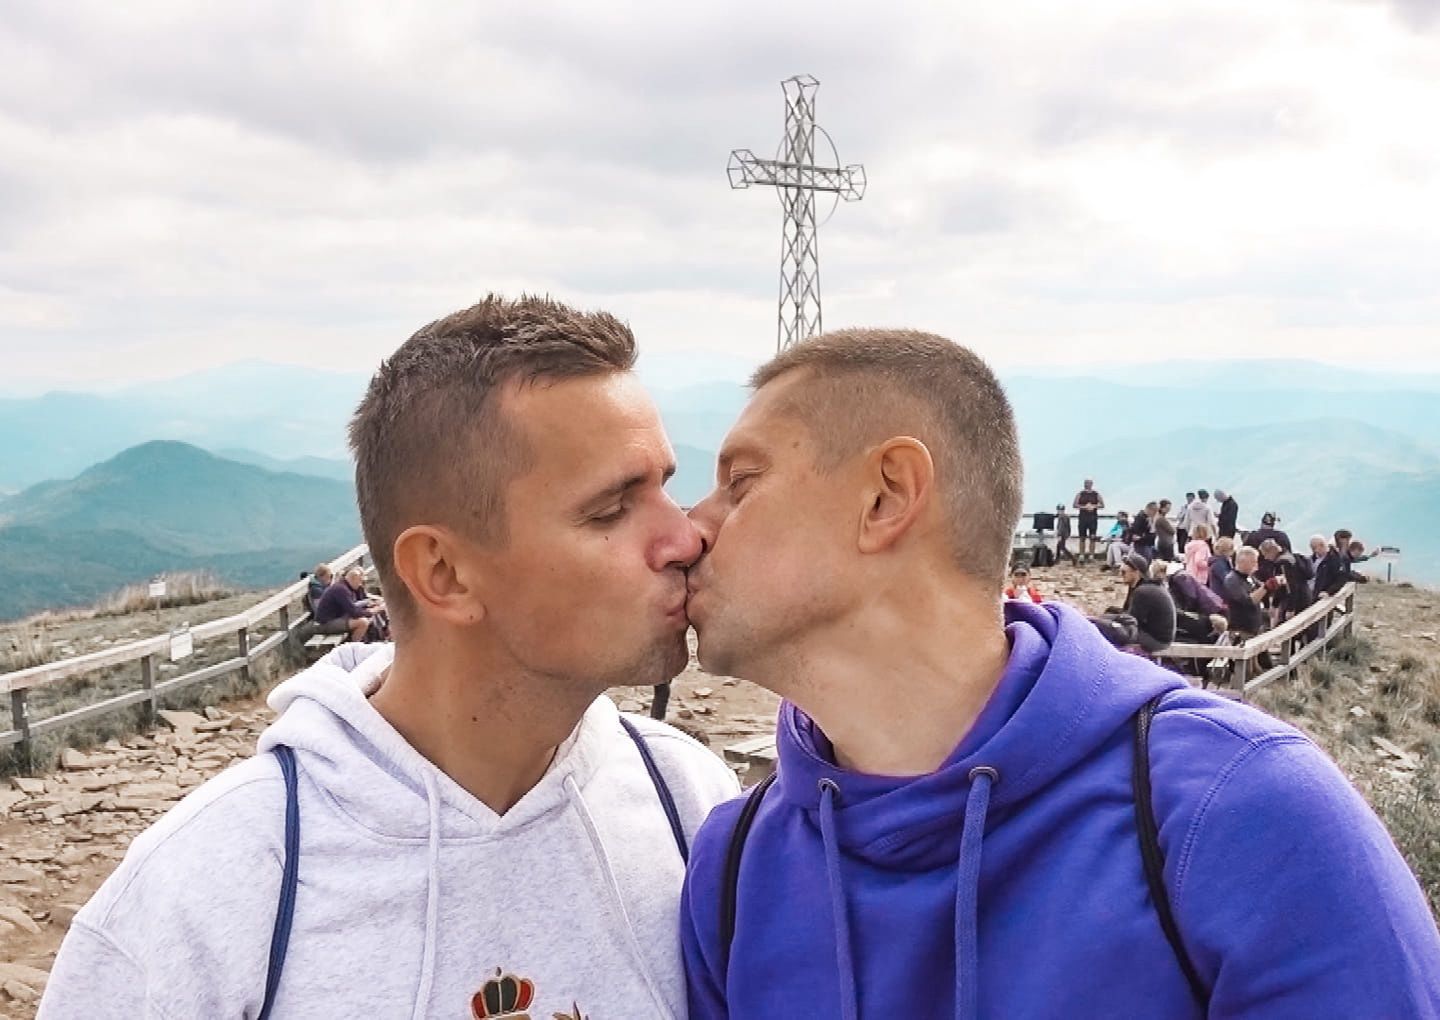 Pocałunek gejów z krzyżem w tle. Internauci: "prowokacja"